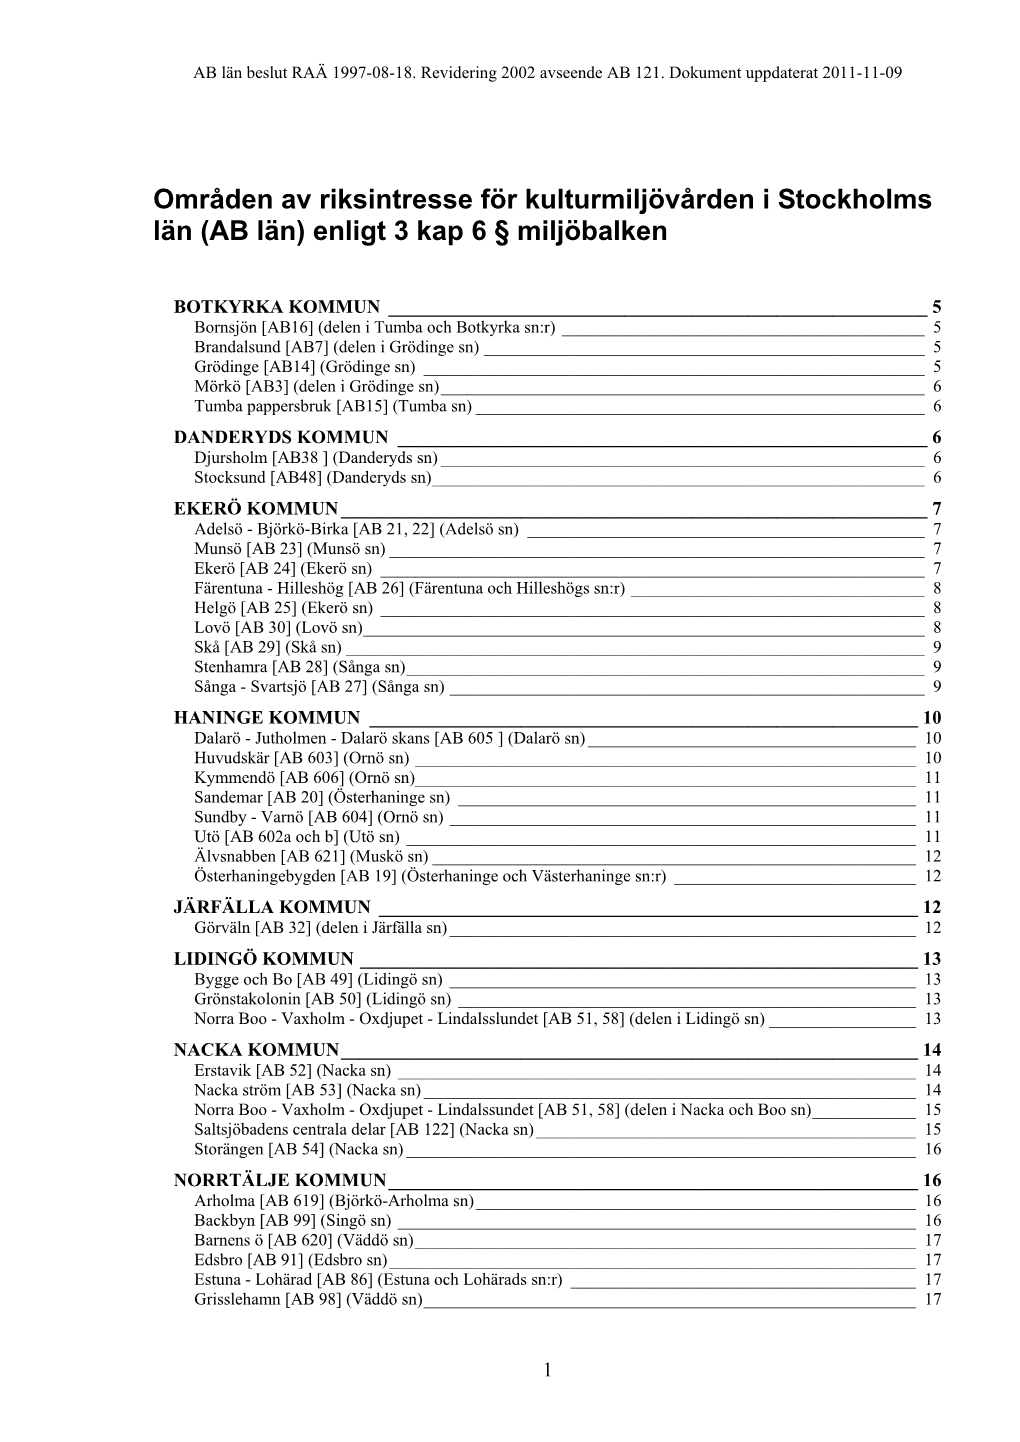 Områden Av Riksintresse För Kulturmiljövården I Stockholms Län (AB Län) Enligt 3 Kap 6 § Miljöbalken